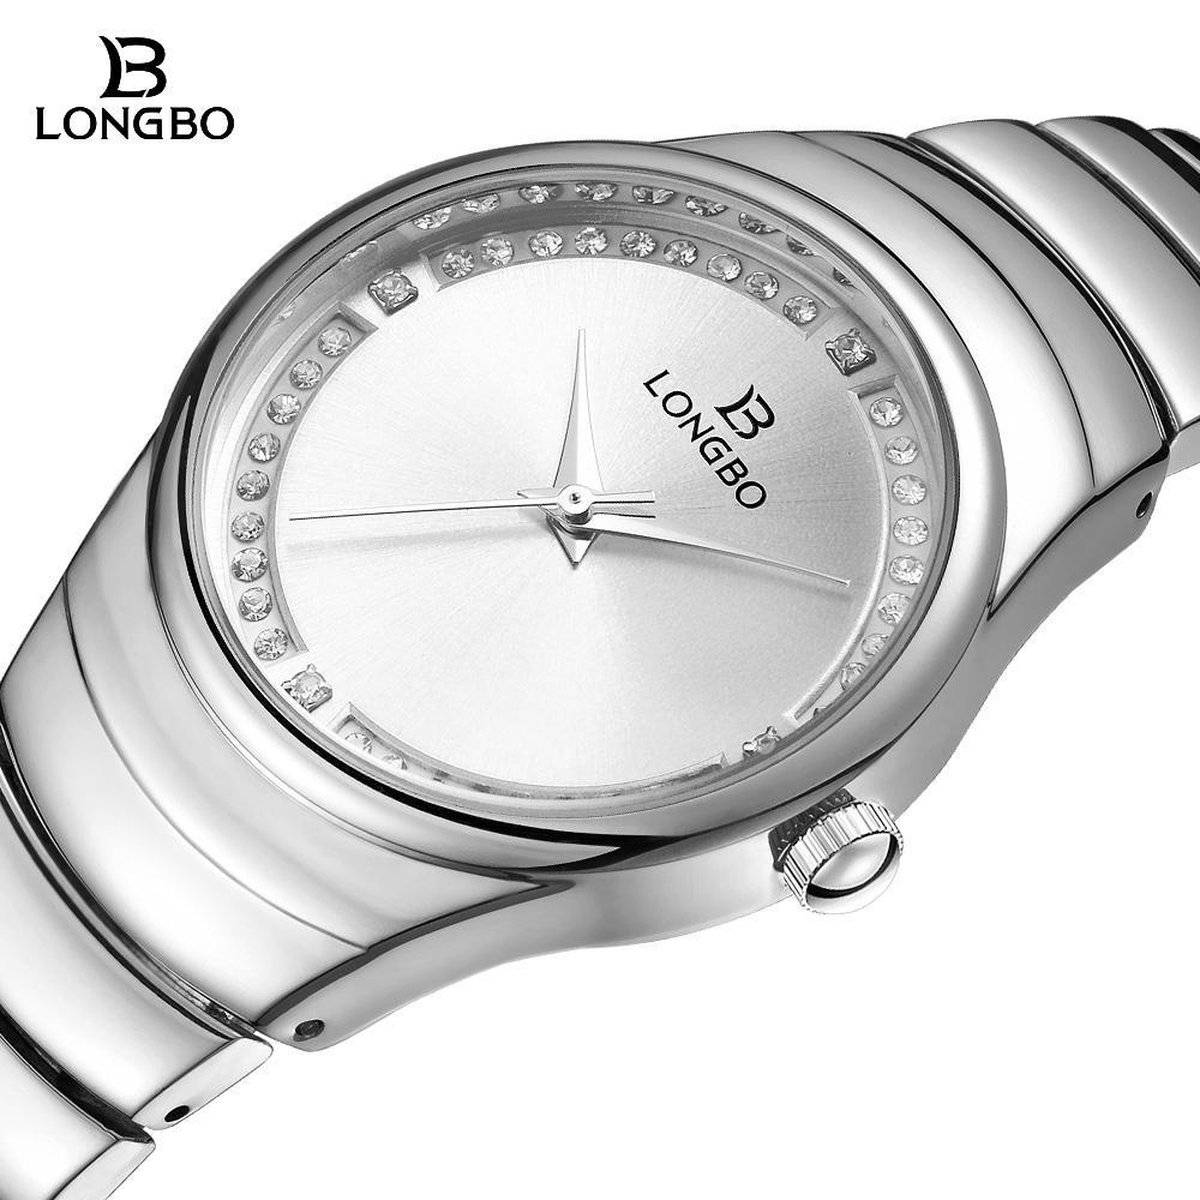 Longbo - Dames Horloge - Zilver/zilver - Ø 37mm (Productvideo)